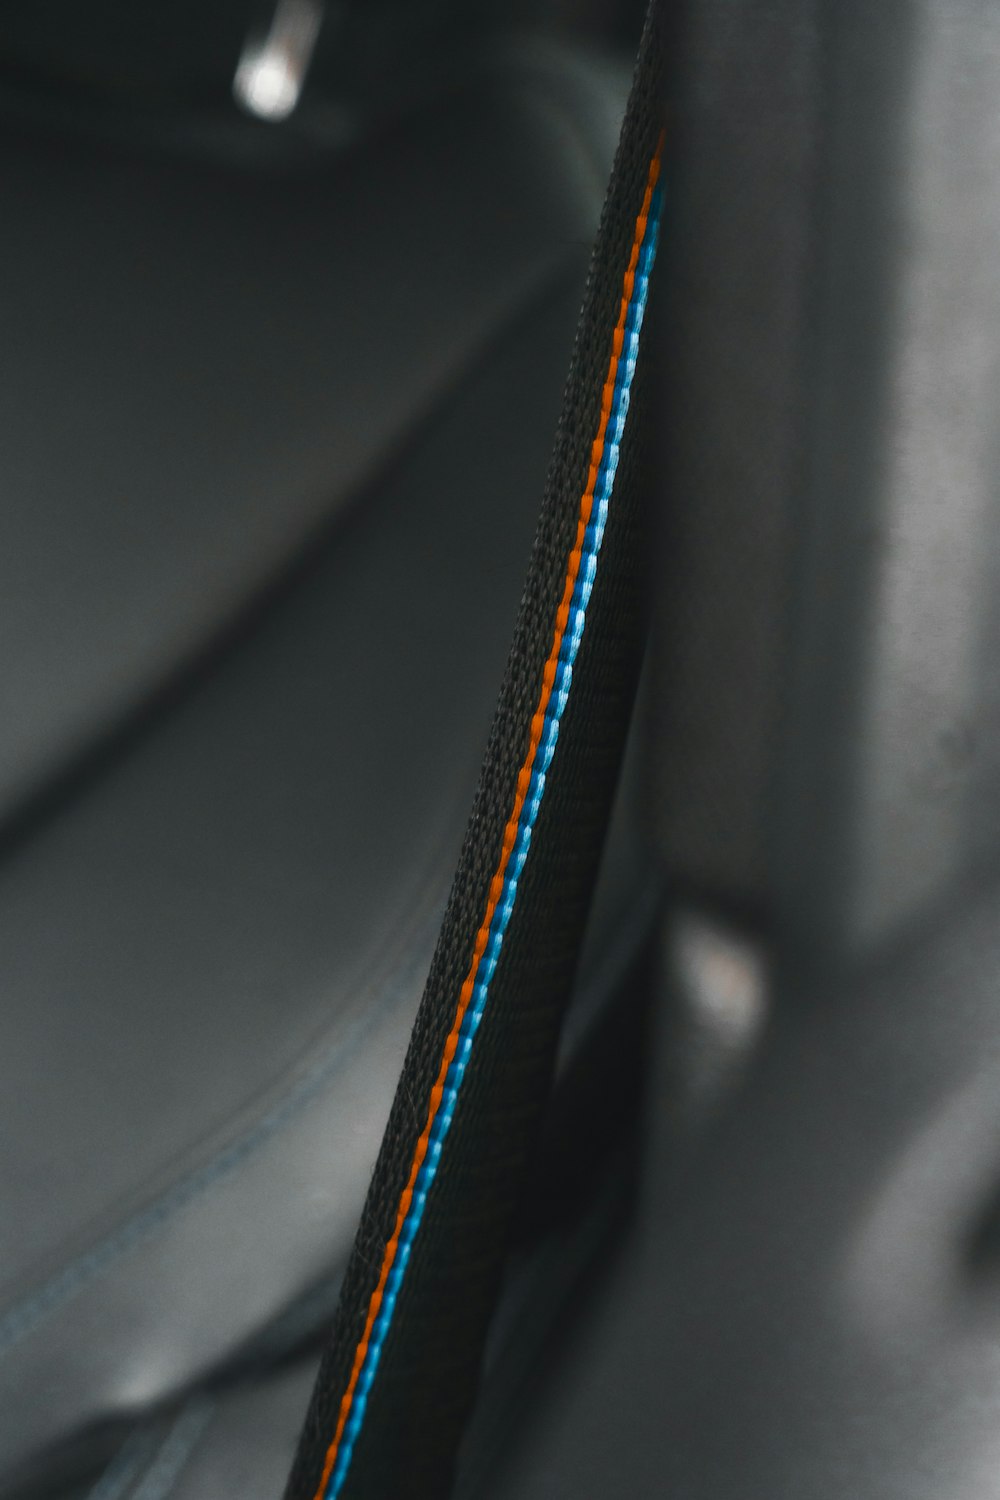 a close up of a seat belt in a car